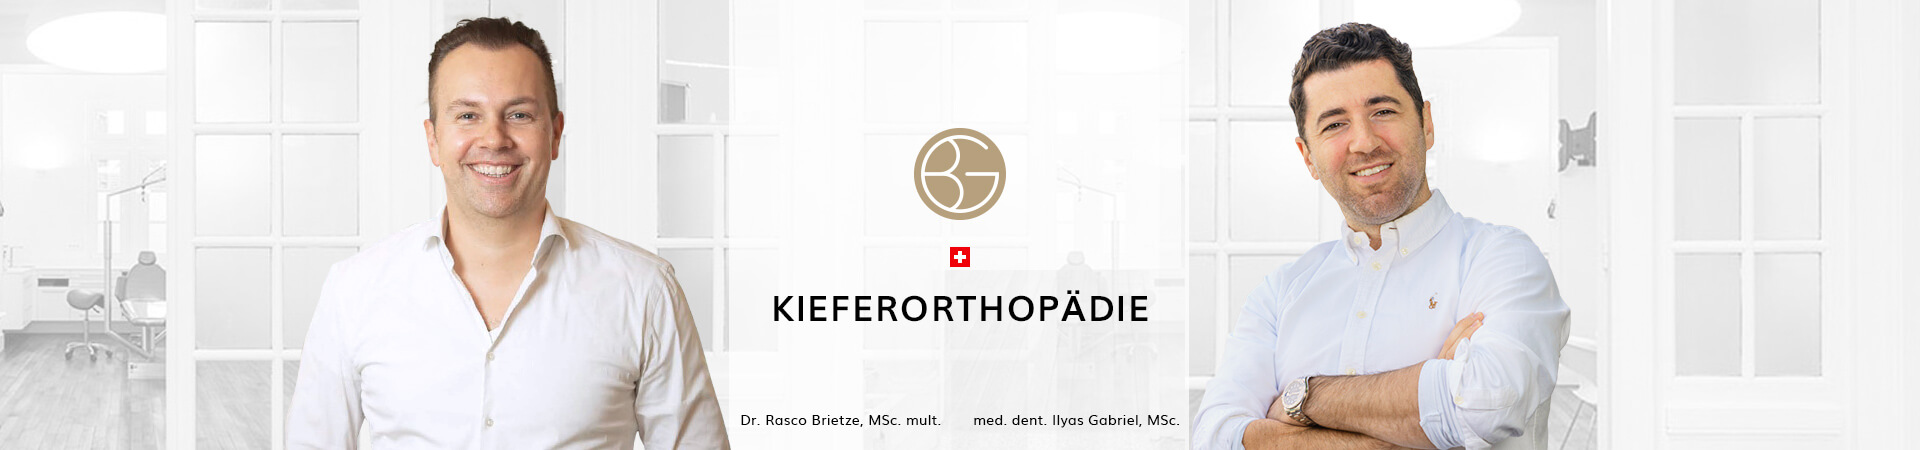 Kieferorthopädie, Zahnärzte Ebmatingen, Dr. Brietze & Dr. Gabriel 